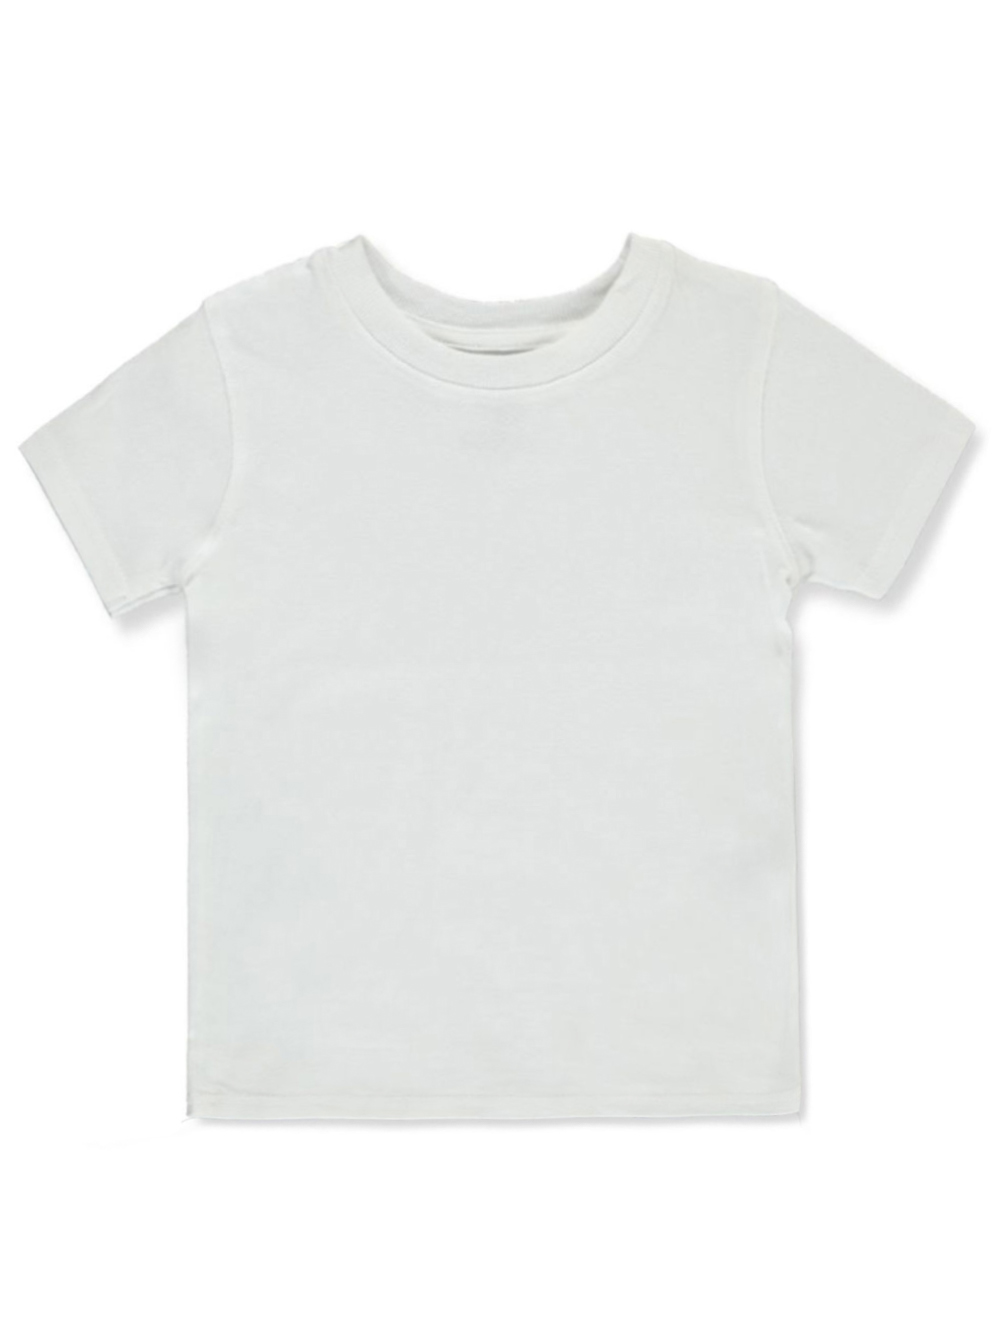 Boys' Basic V-Neck T-Shirt